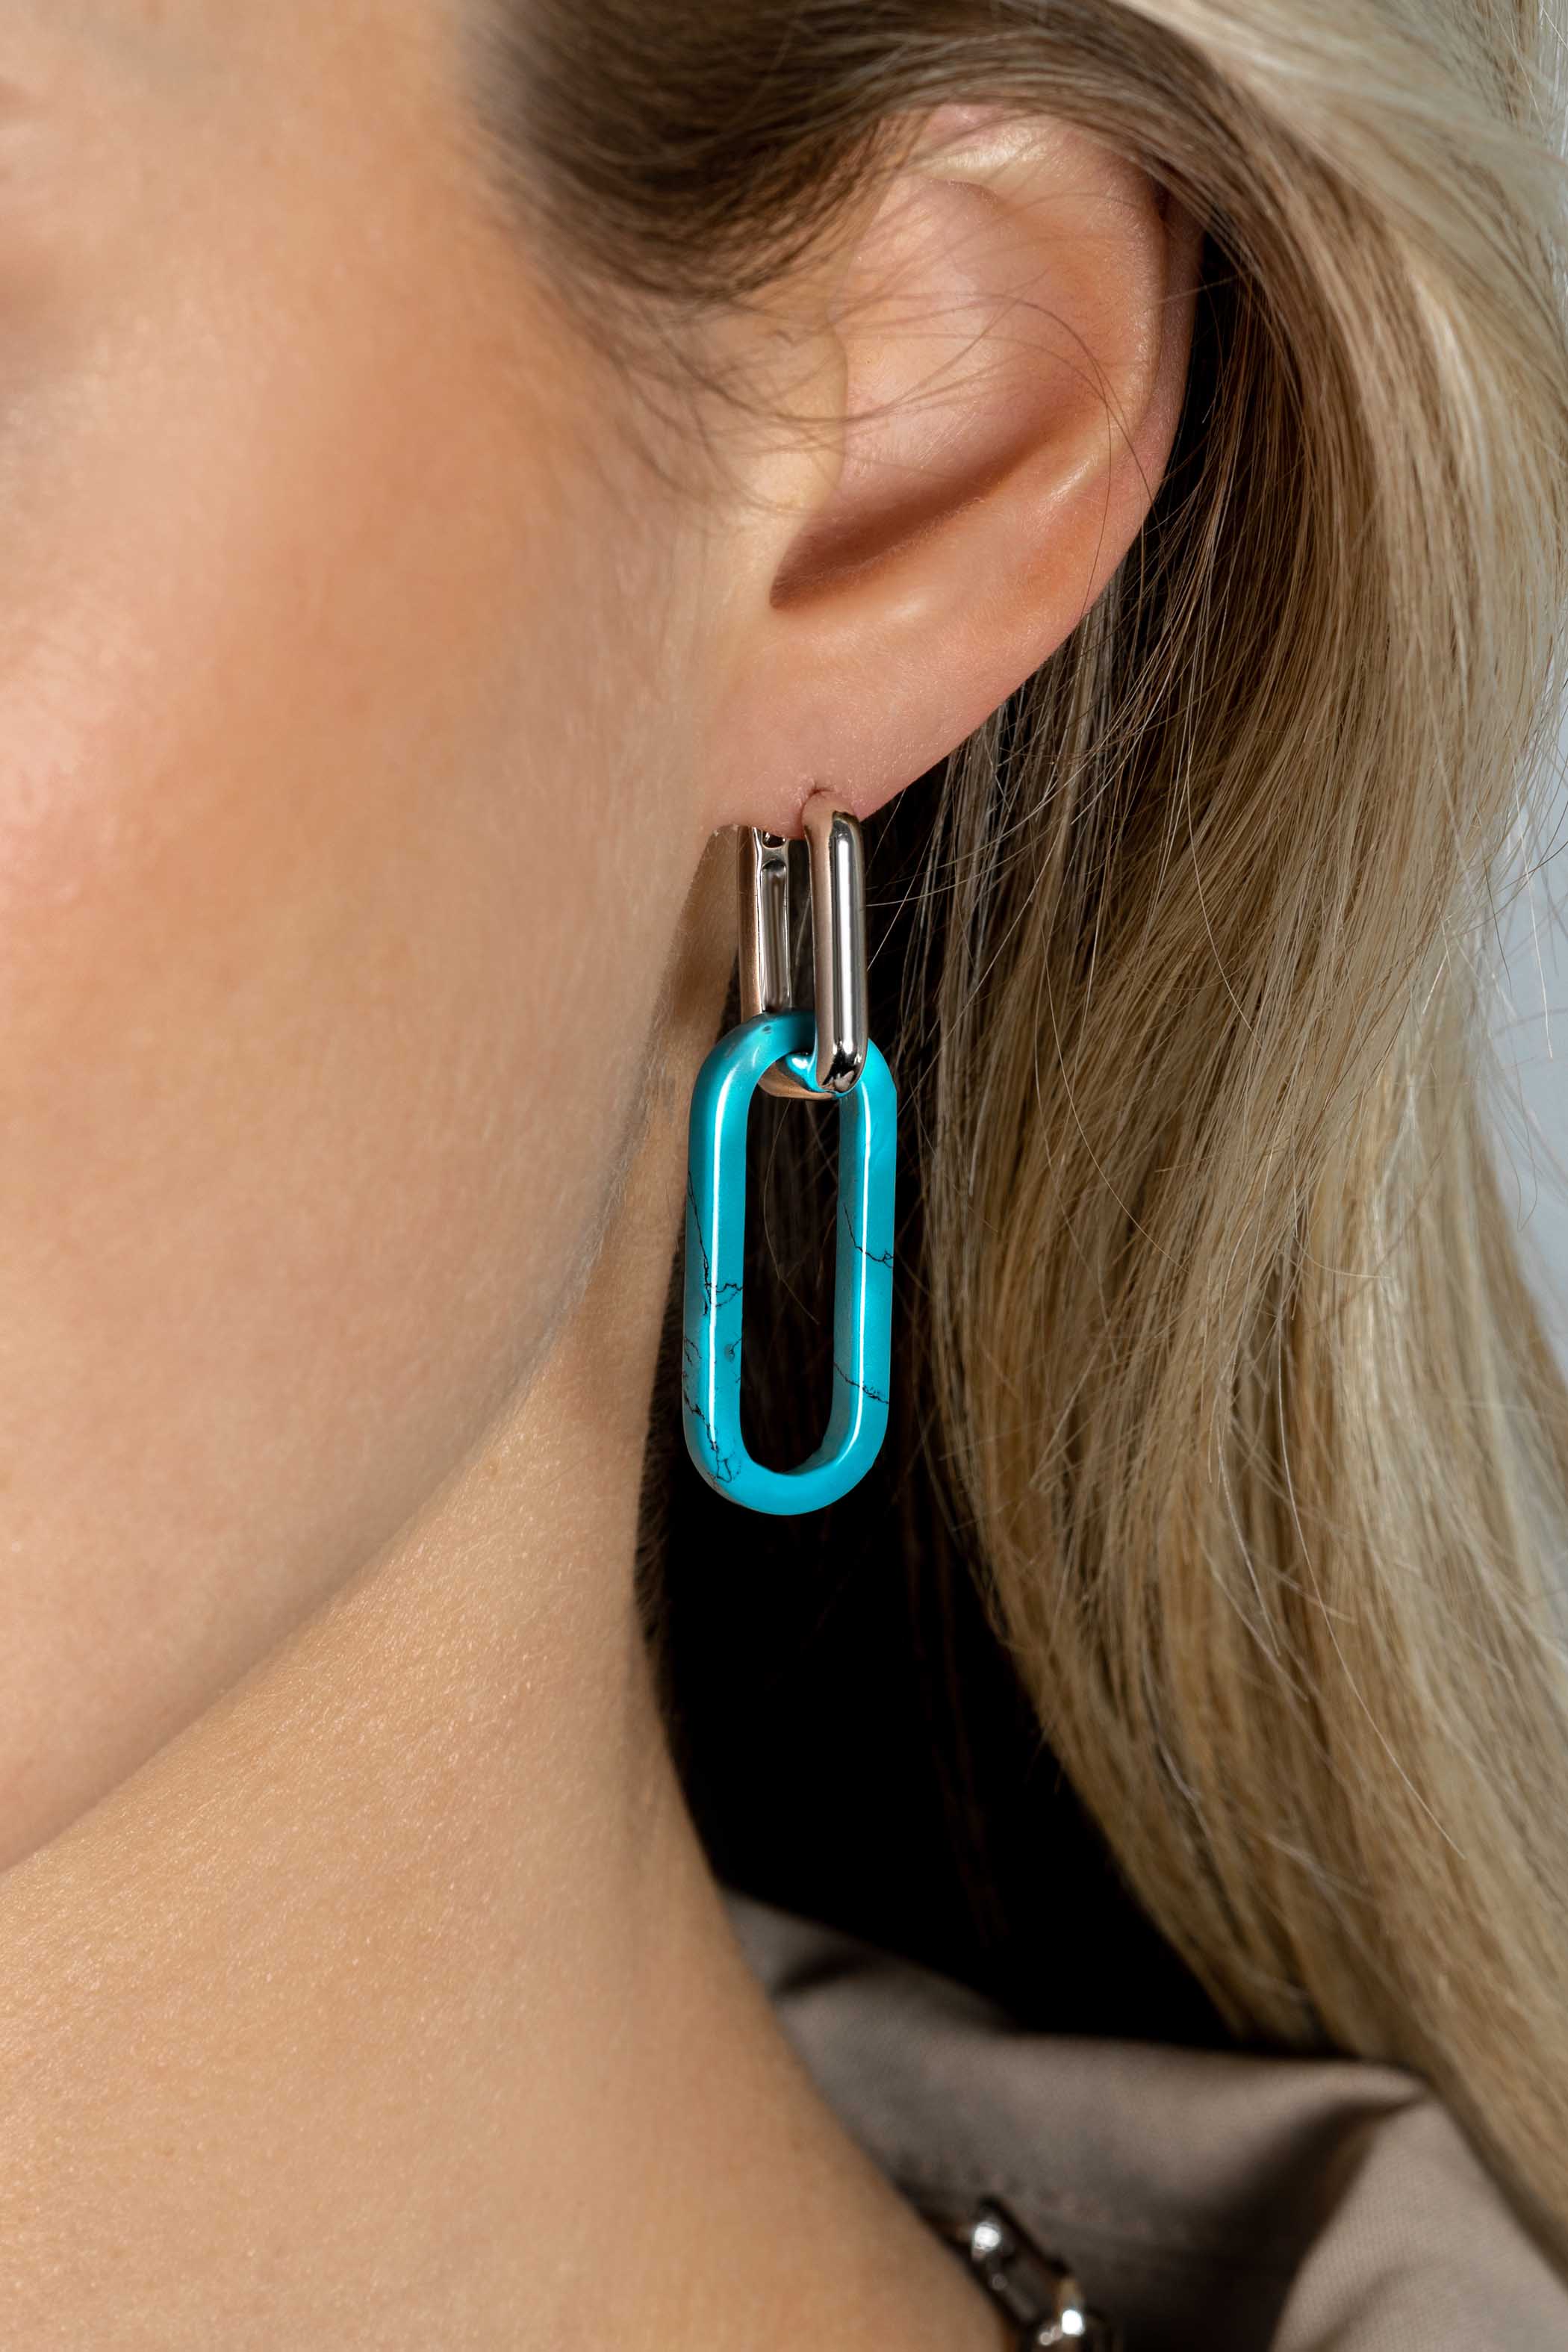 30mm ZINZI Large Oval Earrings Pendants in Trendy Turquoise Blue ZICH2456T (excl. hoop earrings)